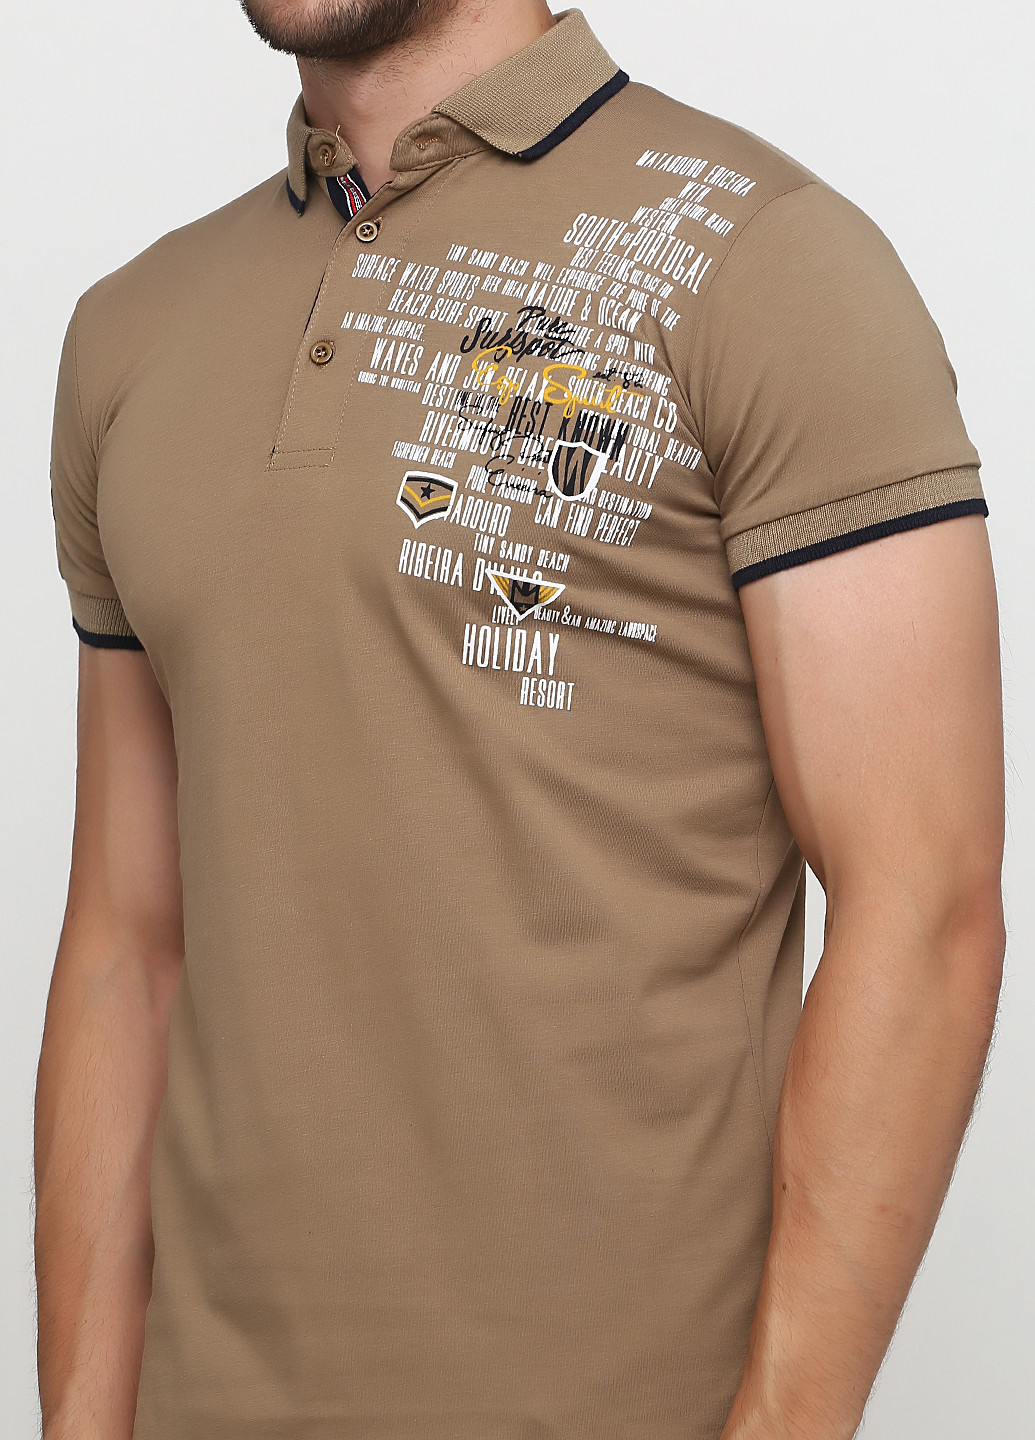 Коричневая футболка-поло для мужчин Golf с надписью